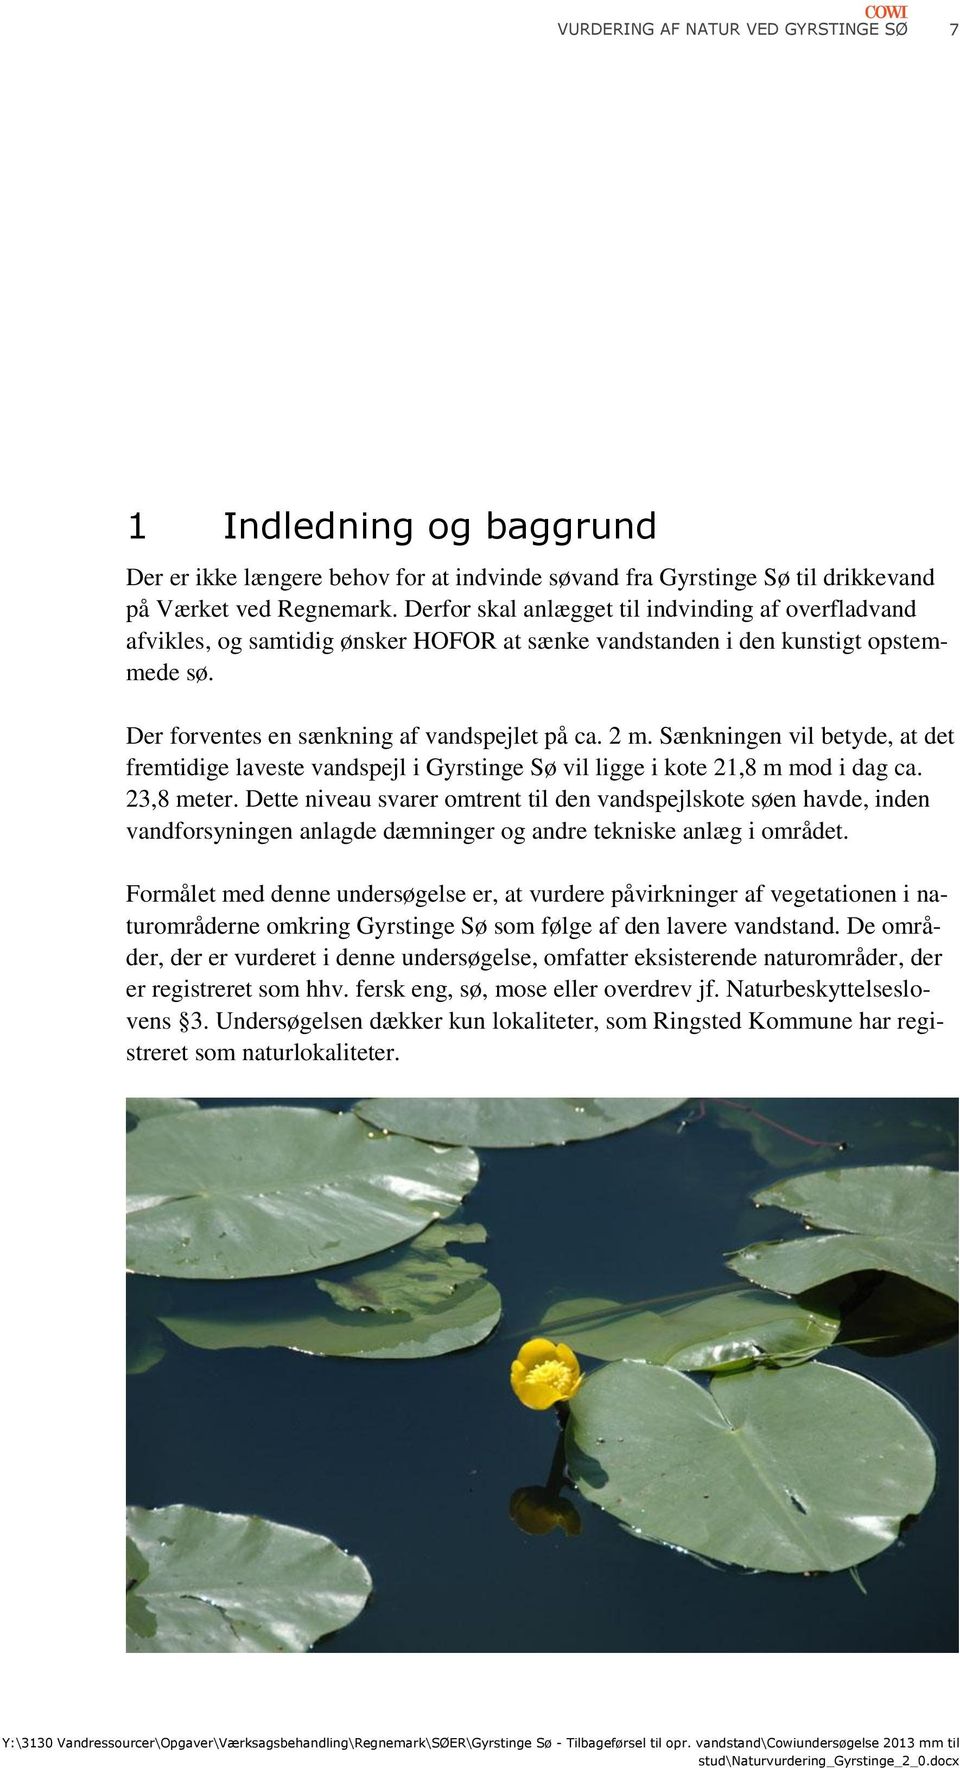 Sænkningen vil betyde, at det fremtidige laveste vandspejl i Gyrstinge Sø vil ligge i kote 21,8 m mod i dag ca. 23,8 meter.